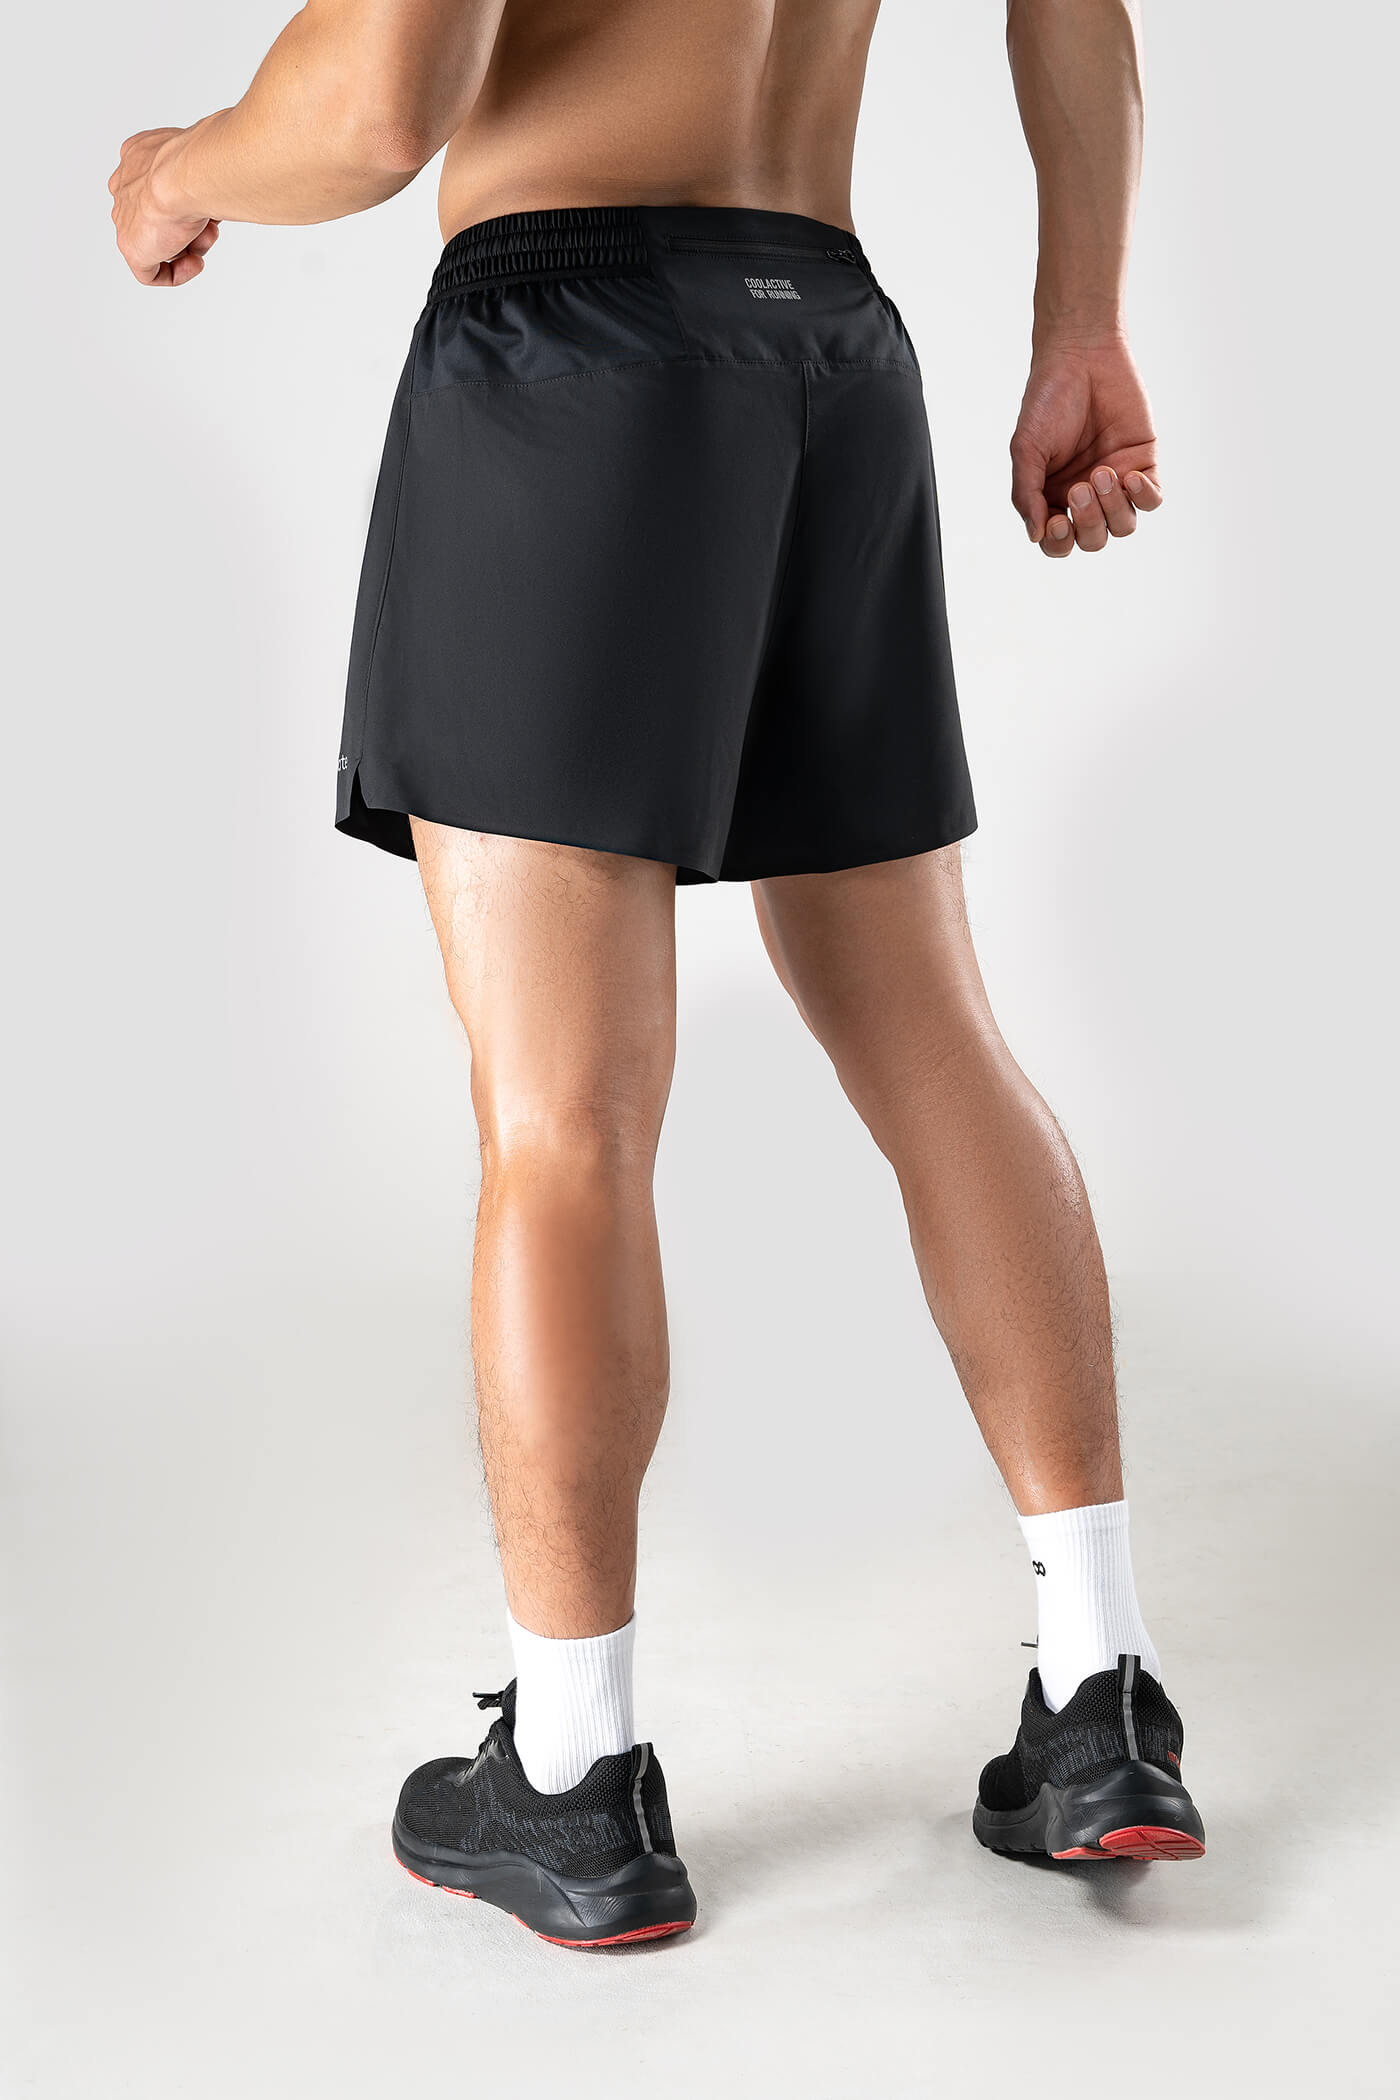 Quần shorts chạy bộ Ultra Fast & Free Run Đen 3